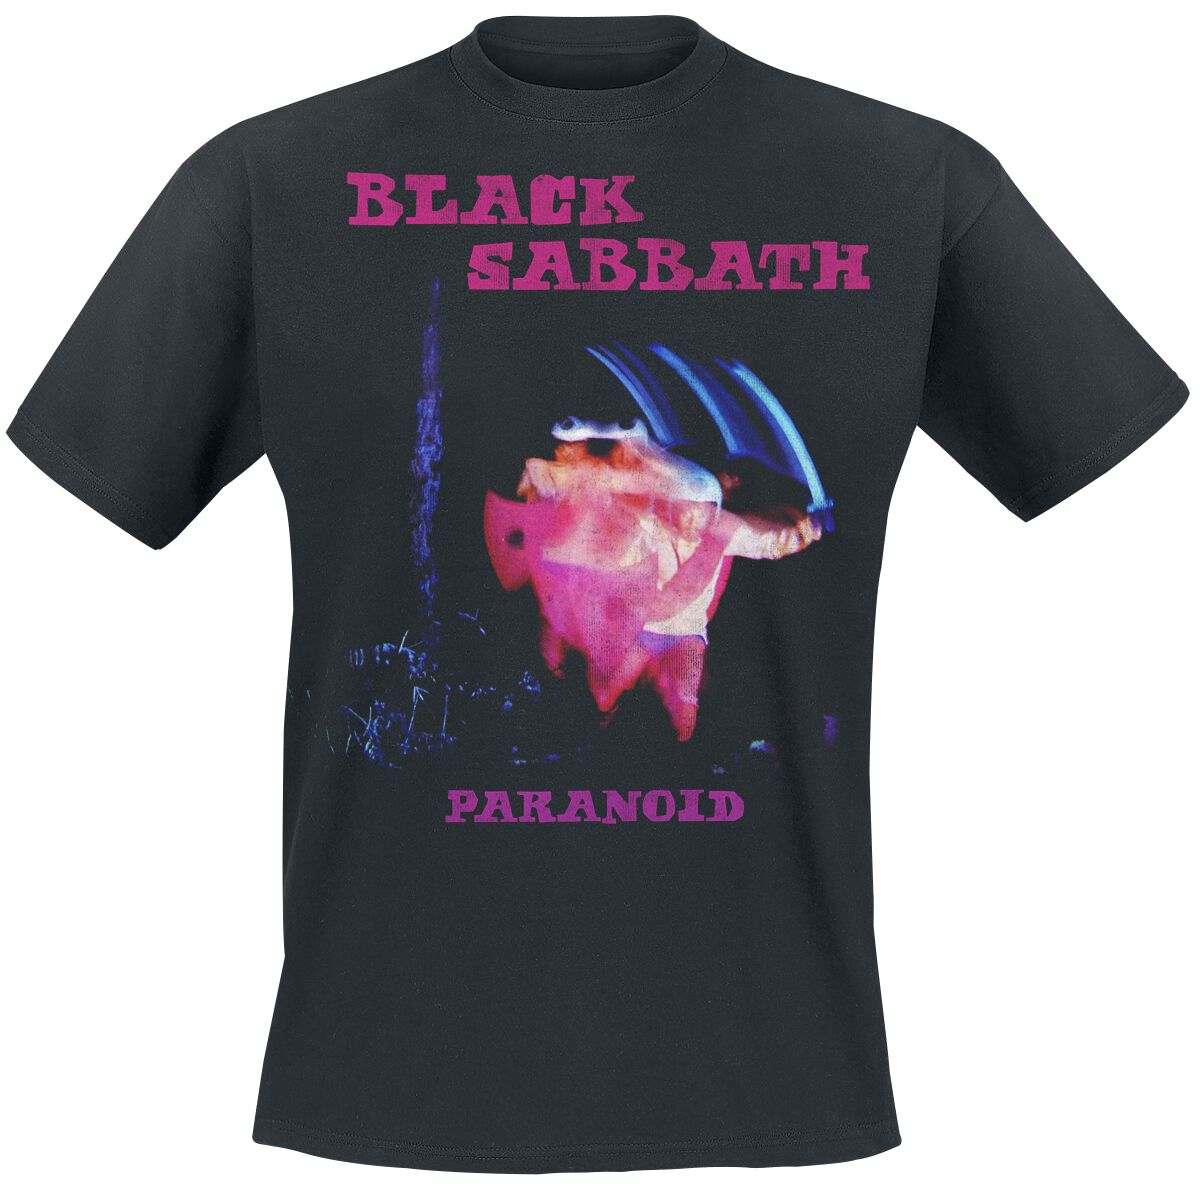 Black Sabbath T-Shirt - Paranoid Tracklist - S bis XXL - für Männer - Größe S - schwarz  - Lizenziertes Merchandise!